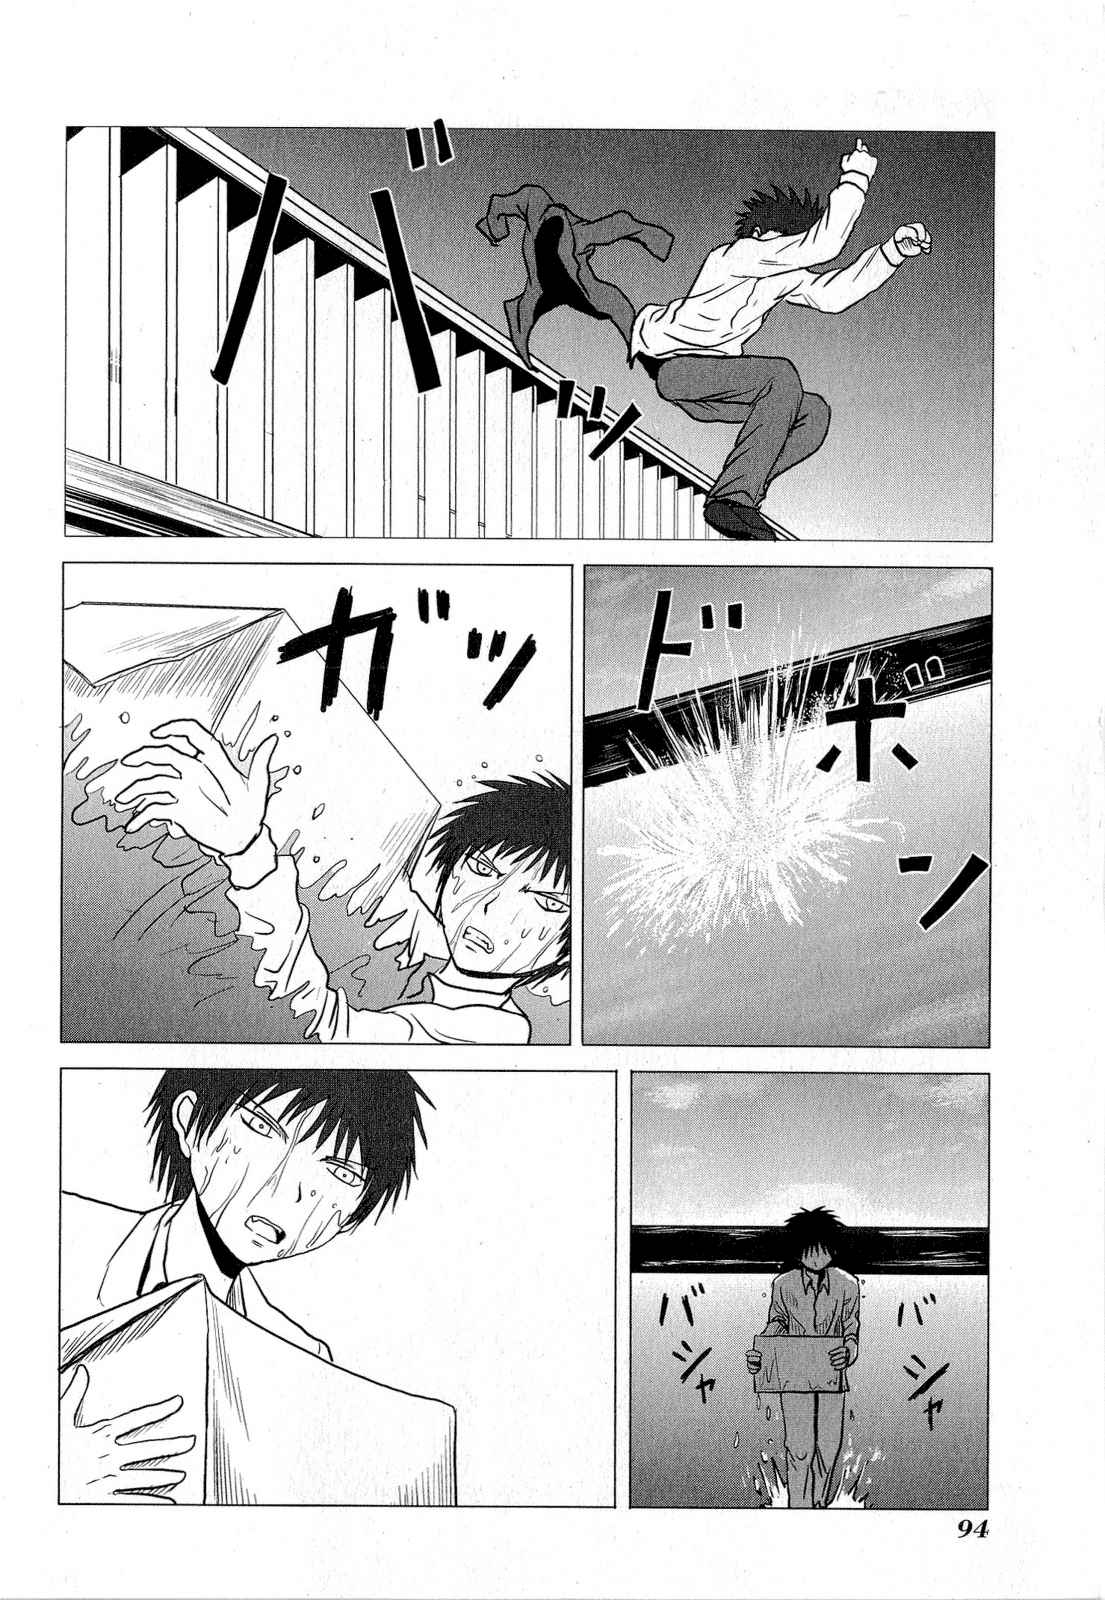 Danshi Koukousei no Nichijou Vol. 4 Ch. 62 High School Boys And Consequences